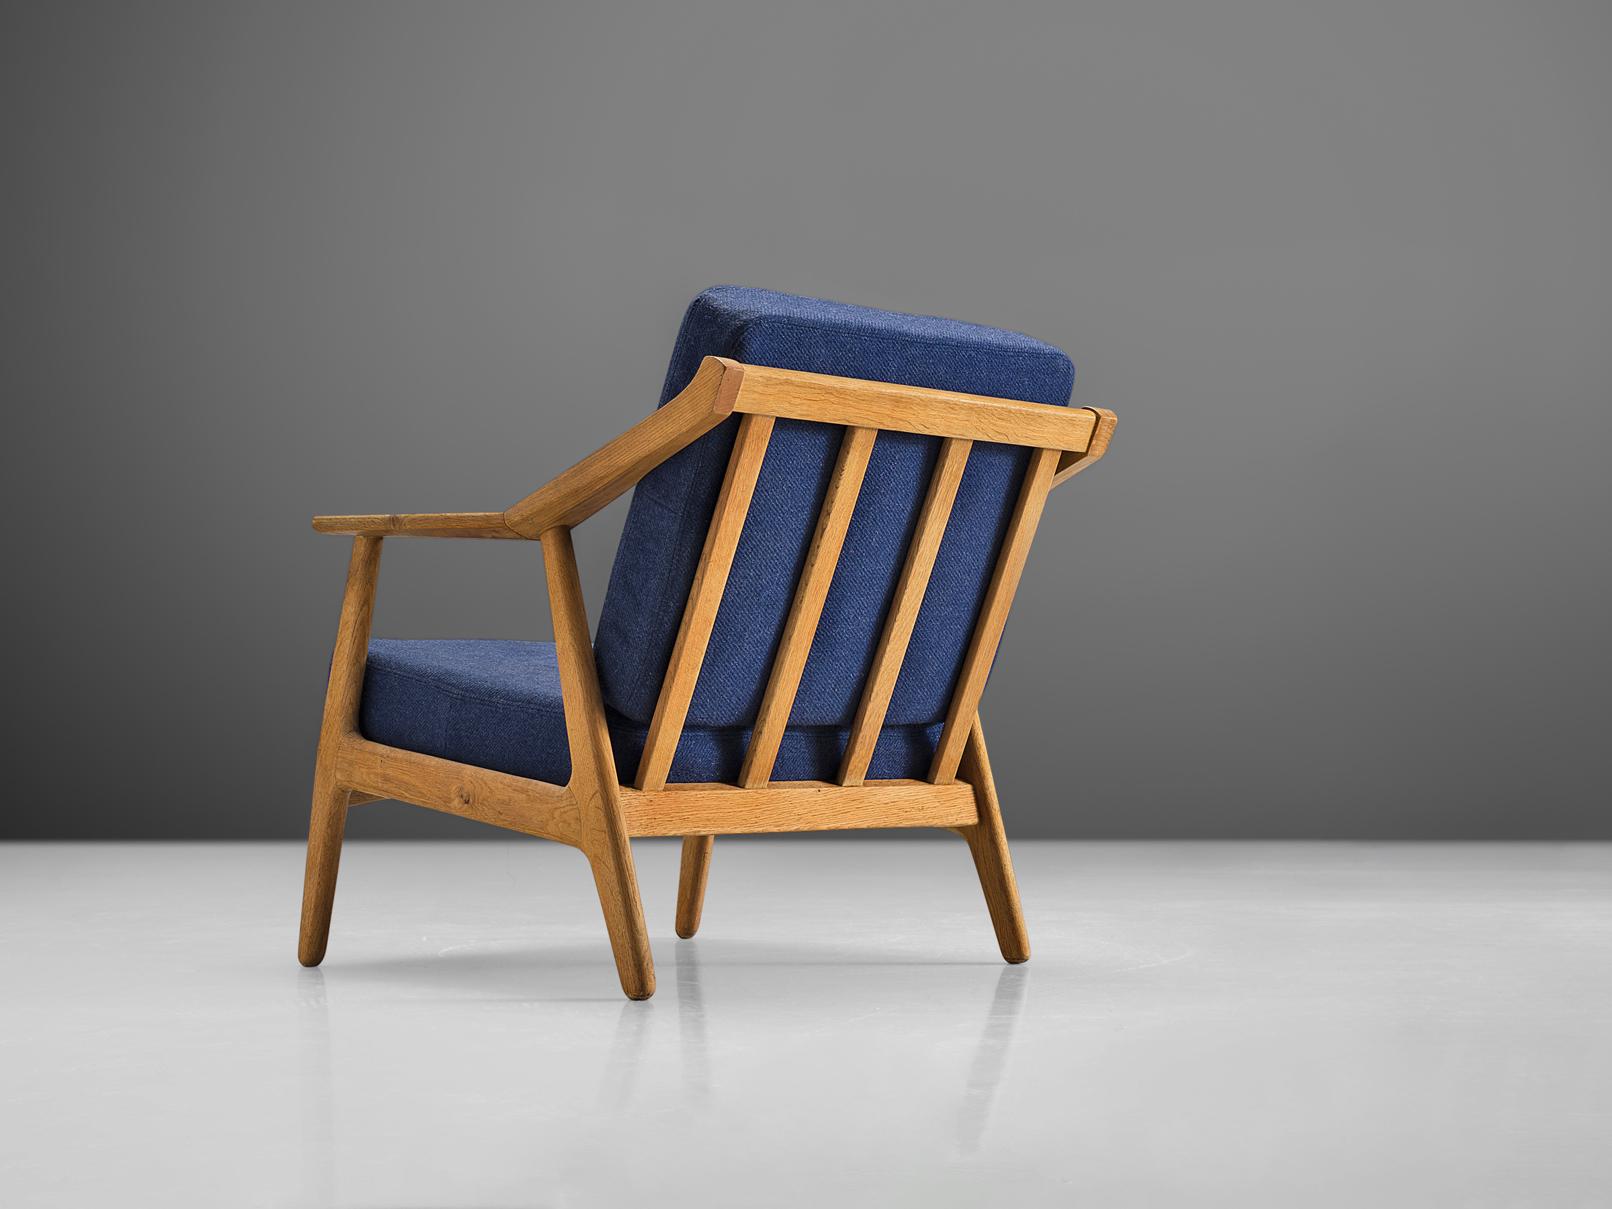 Sessel, Eiche, blauer Stoff, Dänemark, 1960er Jahre

Dieser skulpturale Sessel hat eine Rückenlehne mit Lattenrost und vier runde Beine. Die Armlehnen sind in der Mitte abgewinkelt und an dieser Stelle gehen auch die Hinterbeine in den Rahmen über.